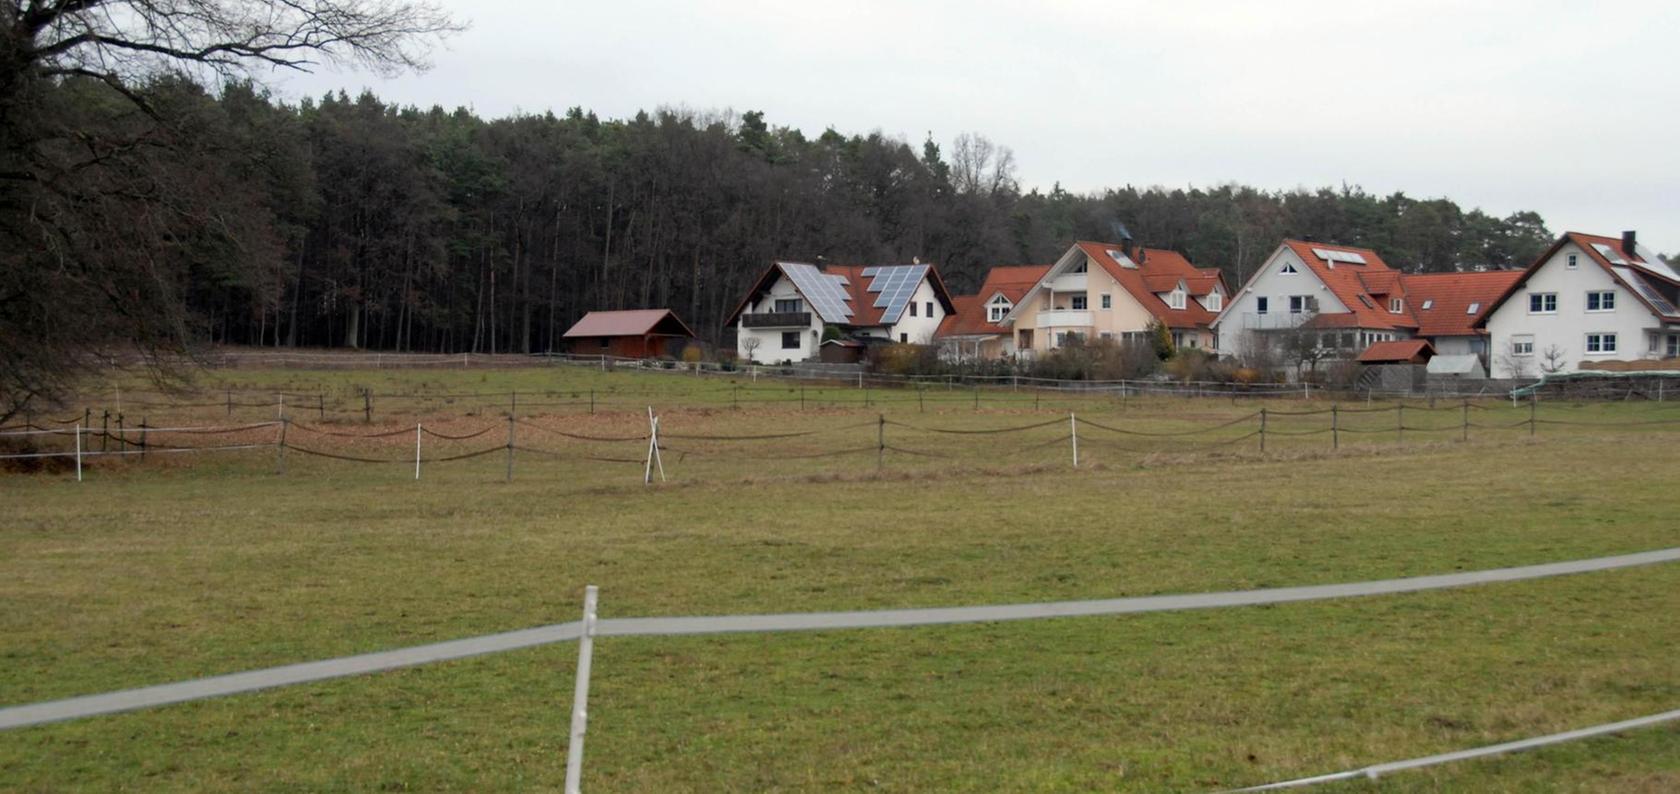 Soll in Klebheim eine neues Baugebiet entstehen?